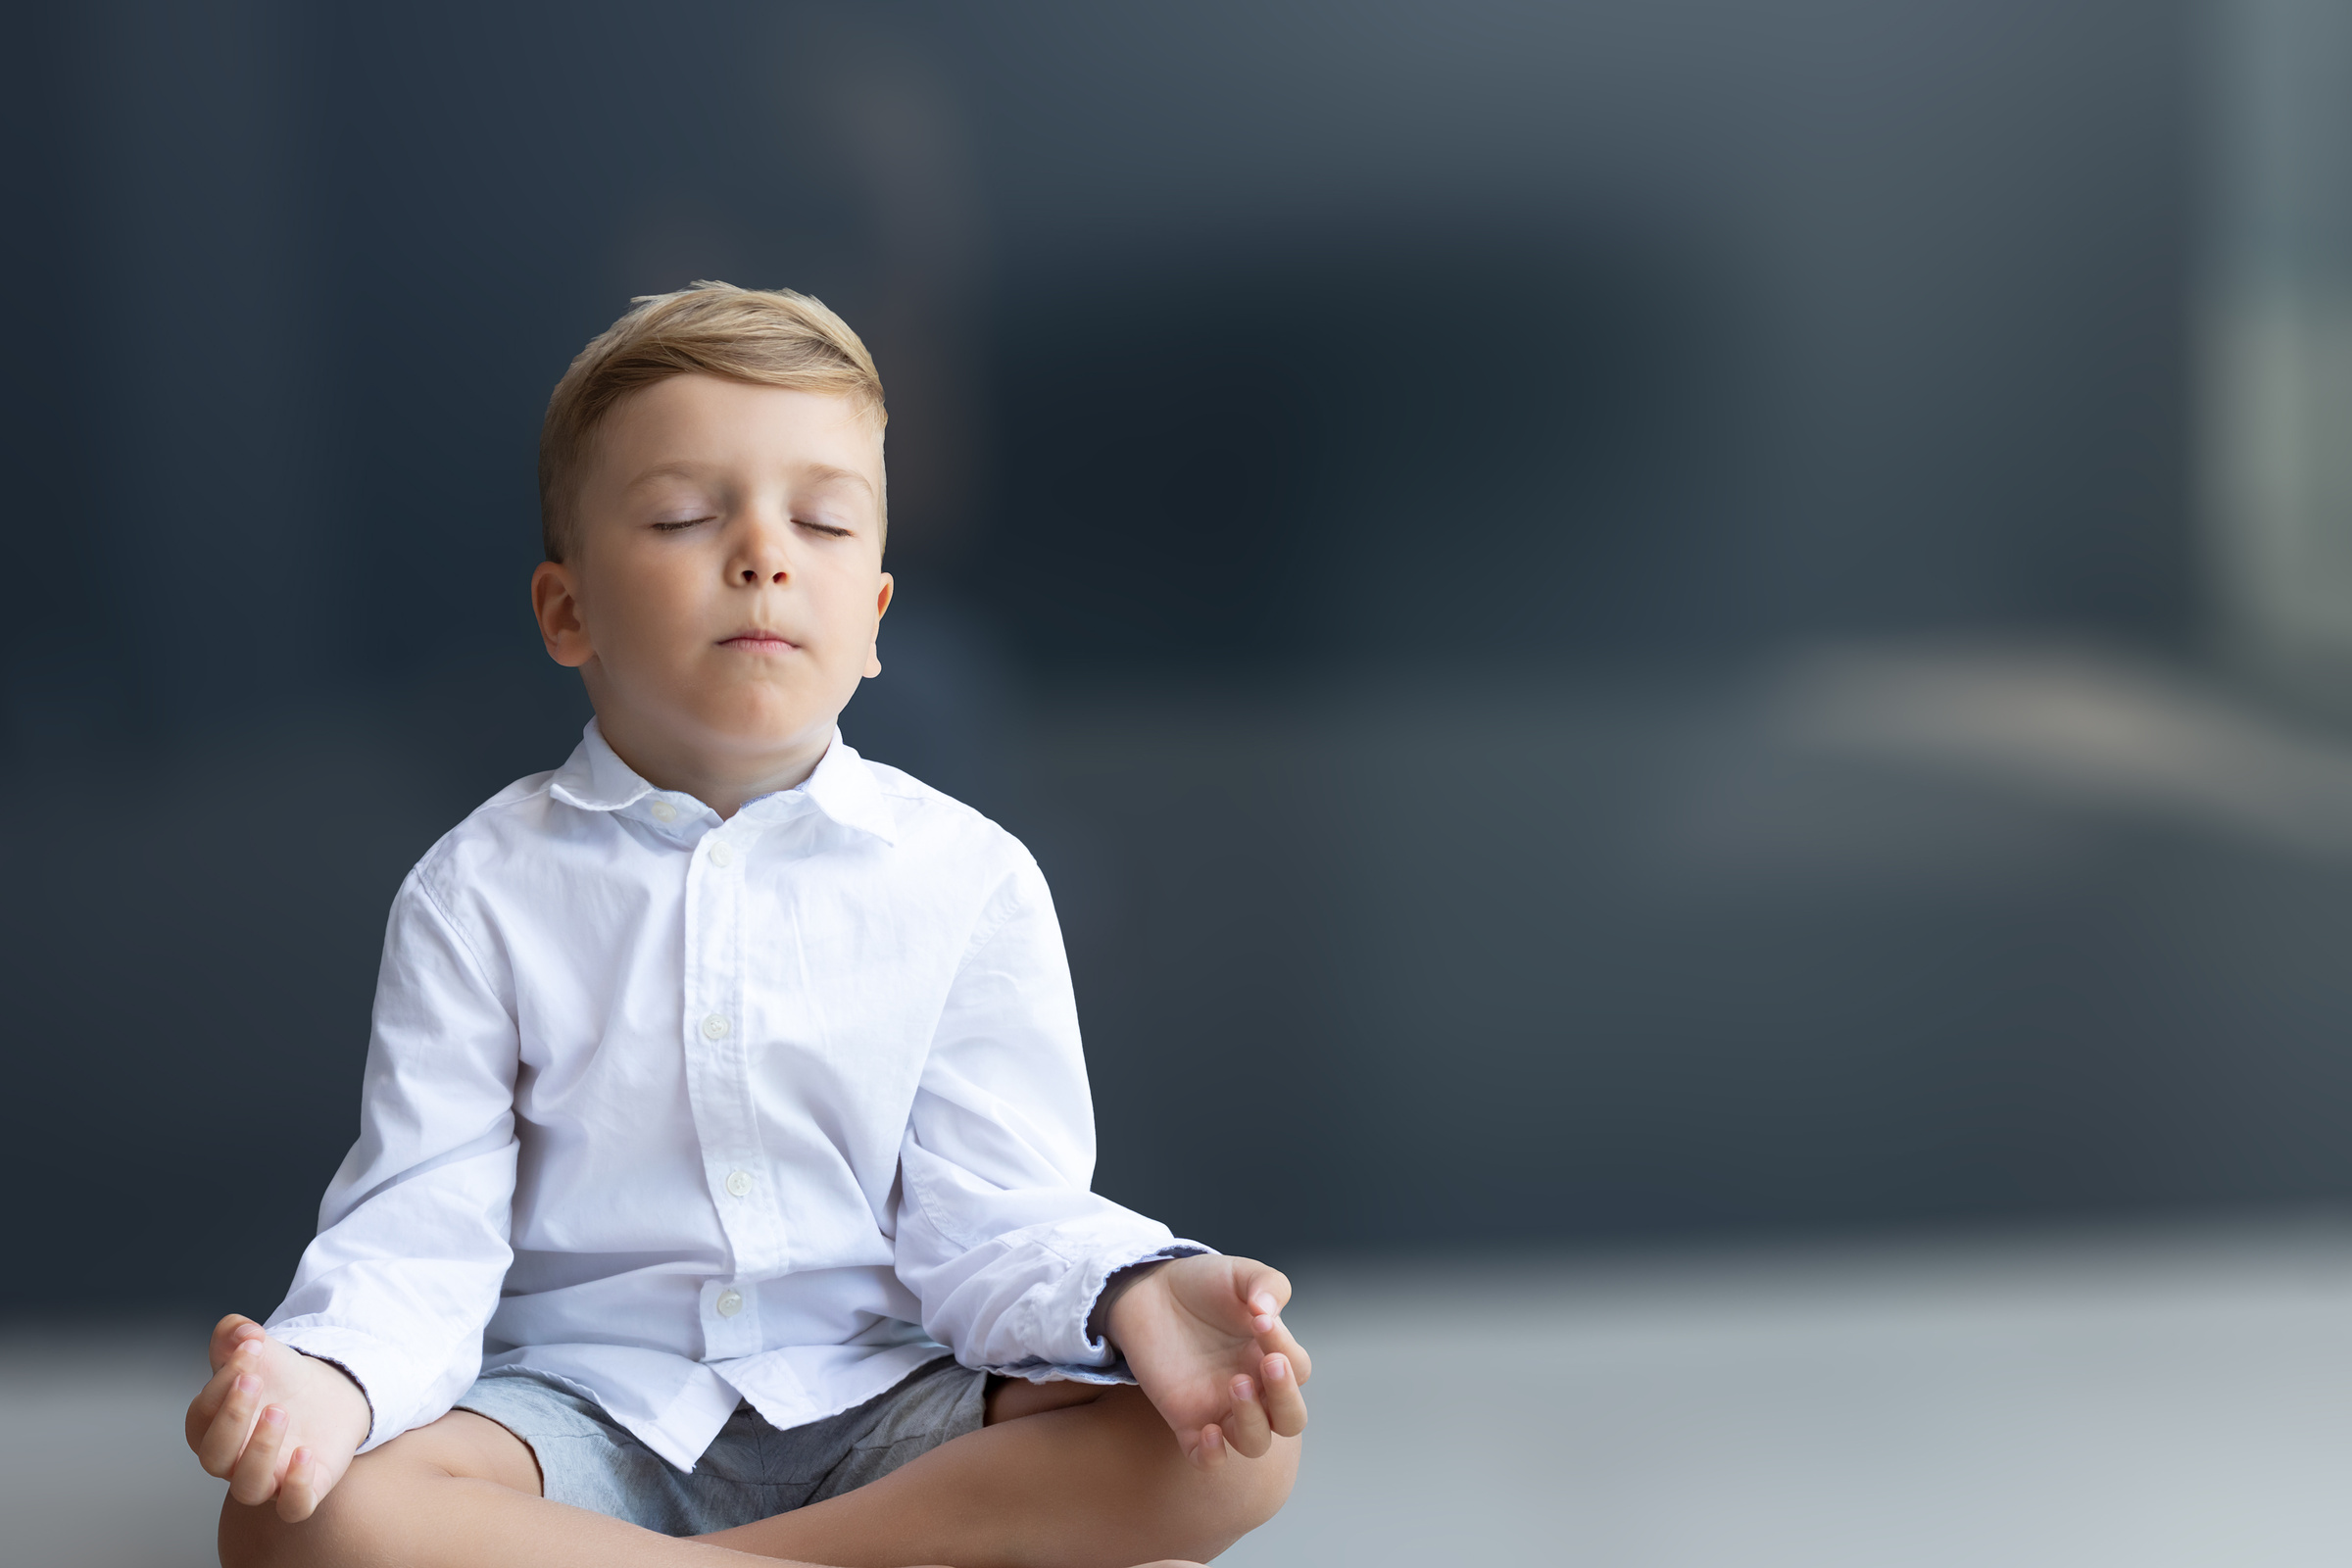 Zen-like Boy Meditating with Eyes Closed.